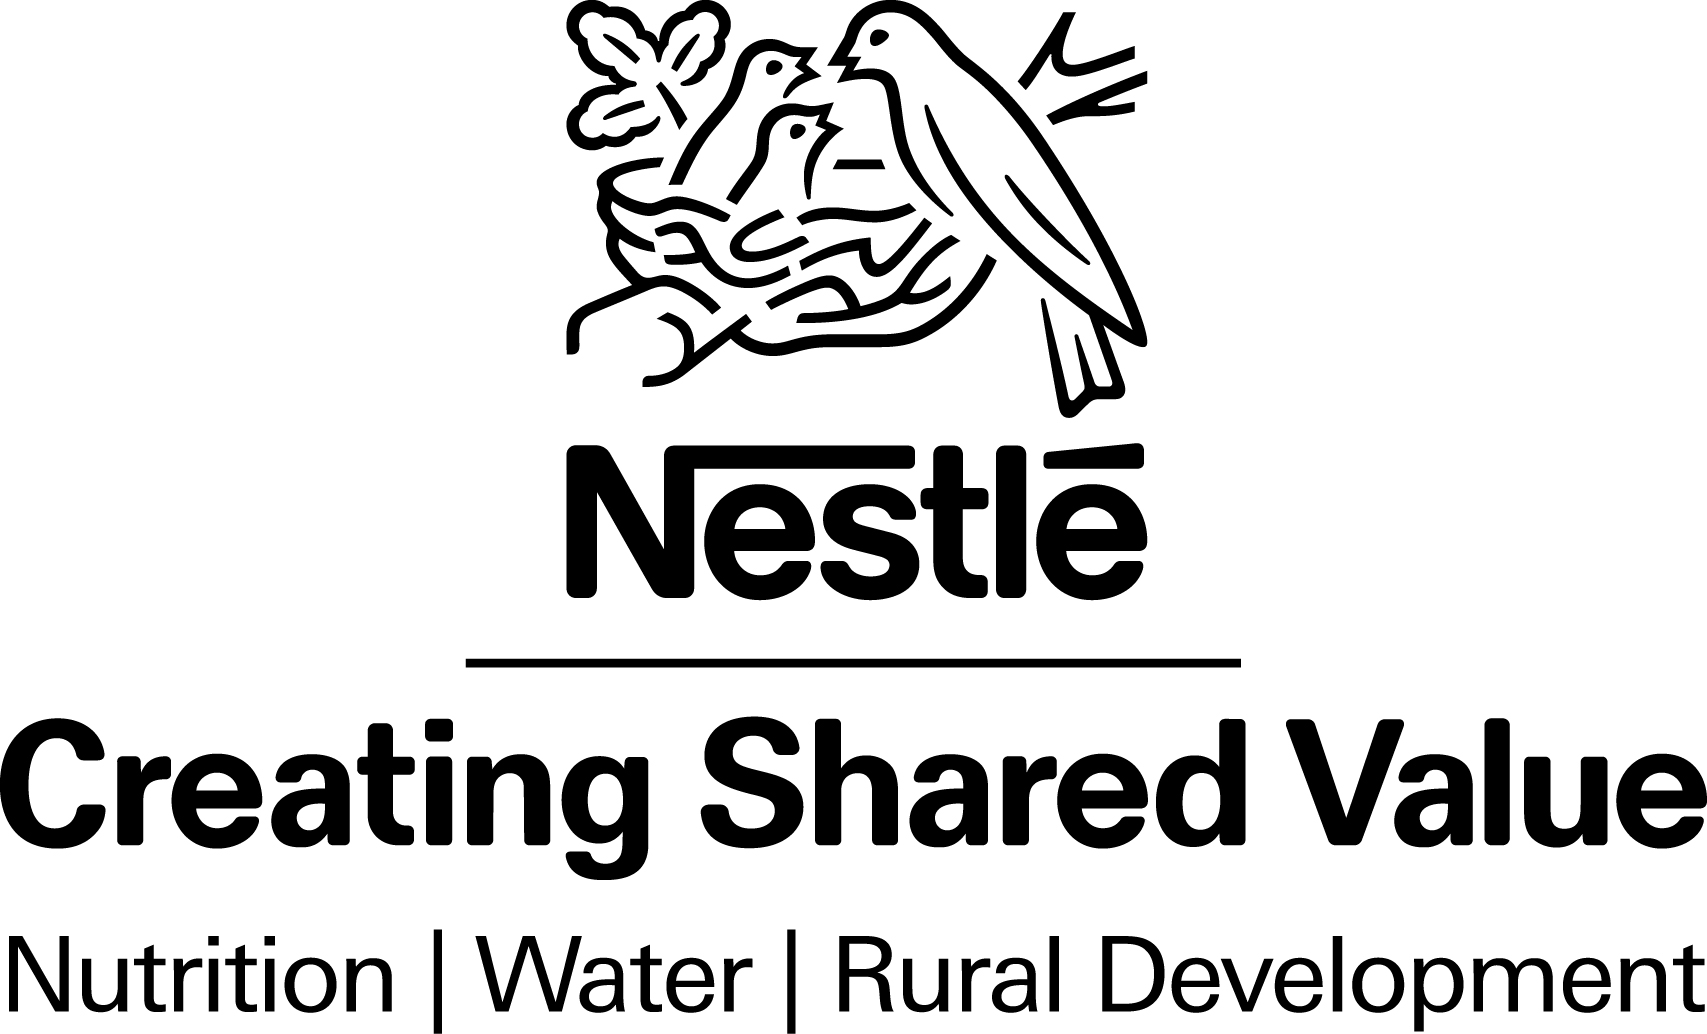 Mari Mengenal Konsep Creating Shared Value Nestle